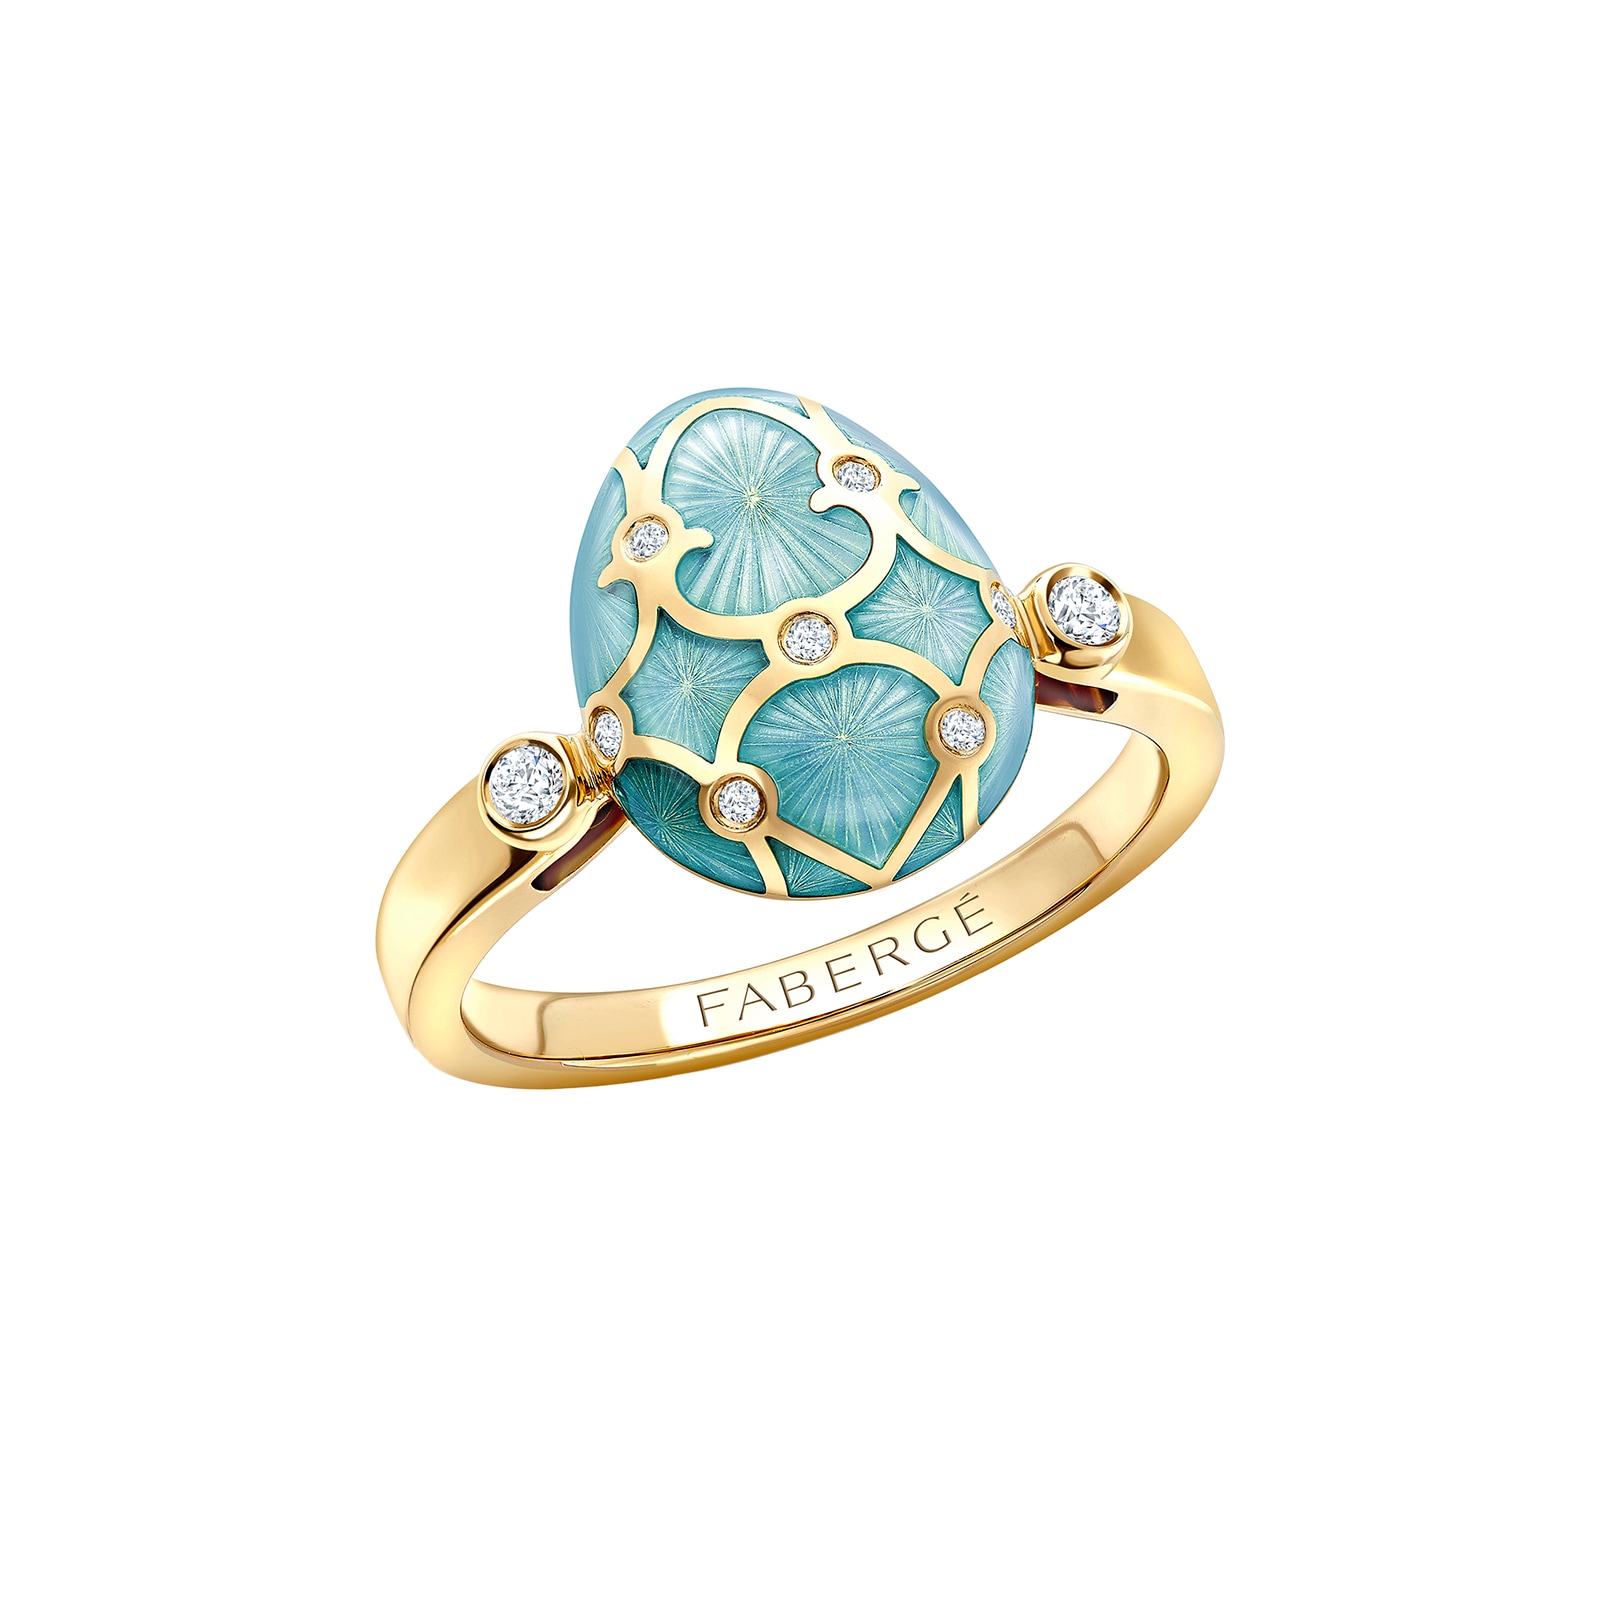 Heritage 18ct Yellow Gold Diamond & Tourquoise Enamel Egg Ring - Ring Size I